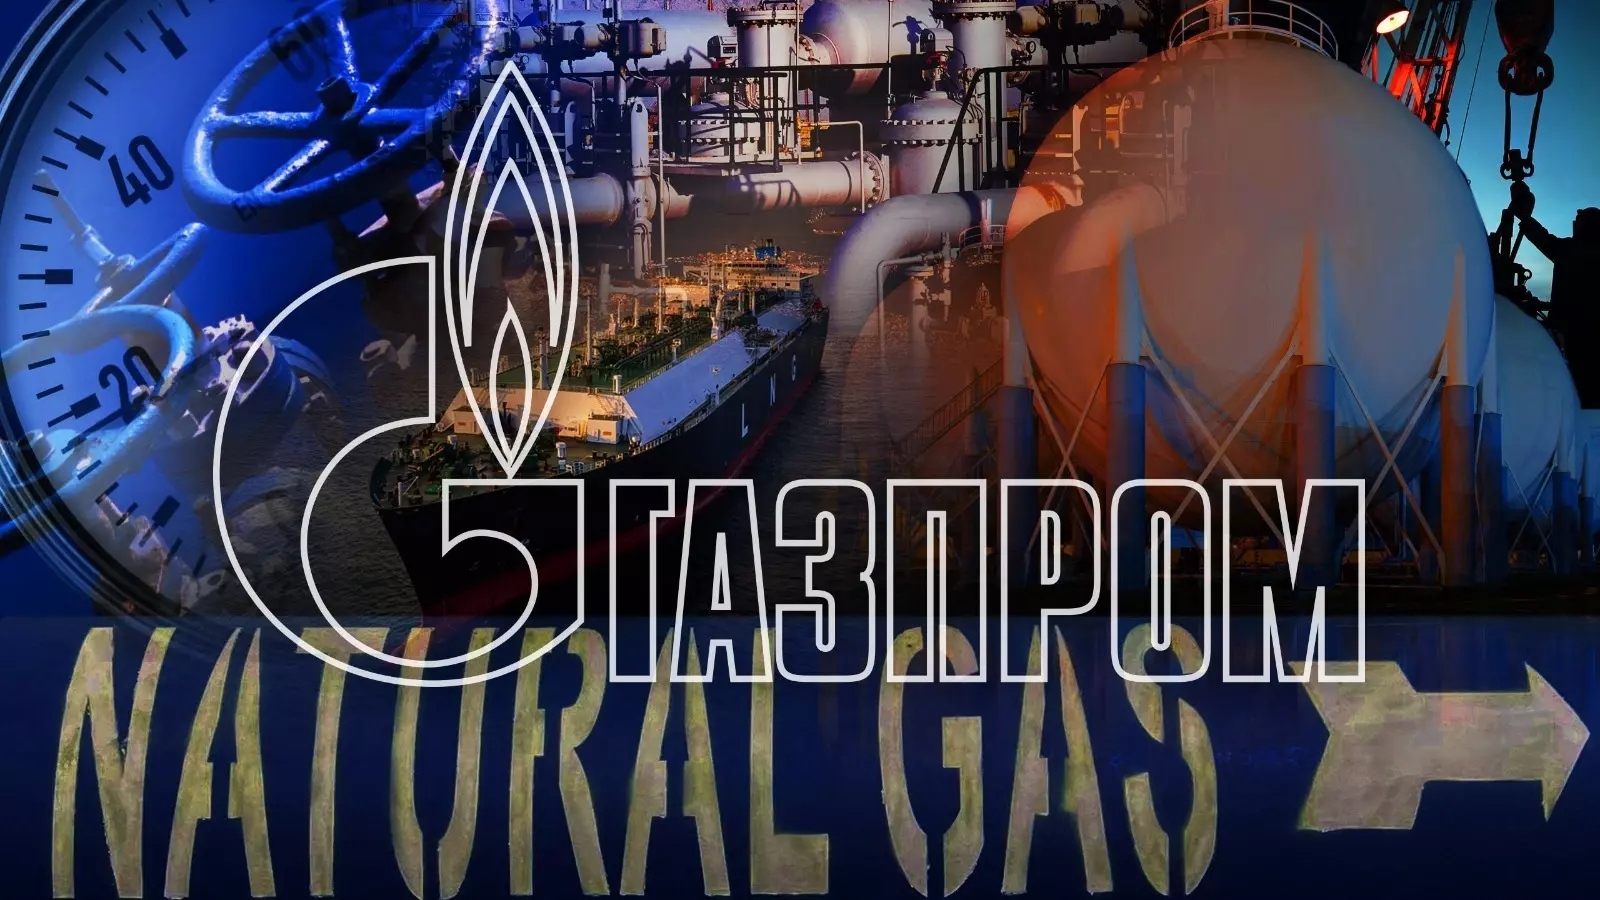 «Газпром» хочет открыть представительство в Узбекистане